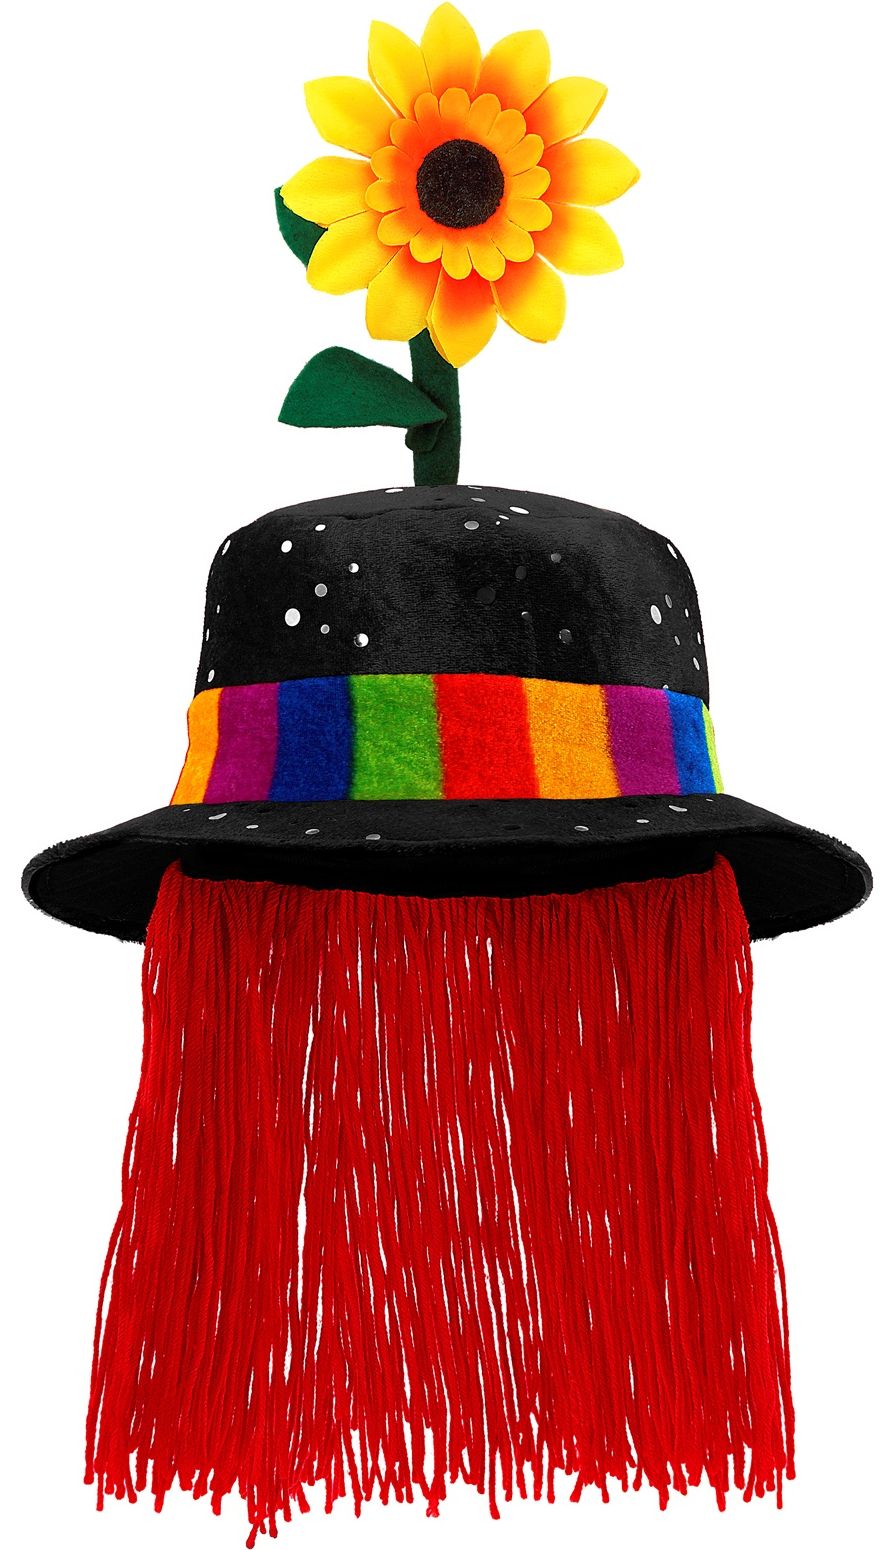 Zwarte clown hoed met zonnebloem